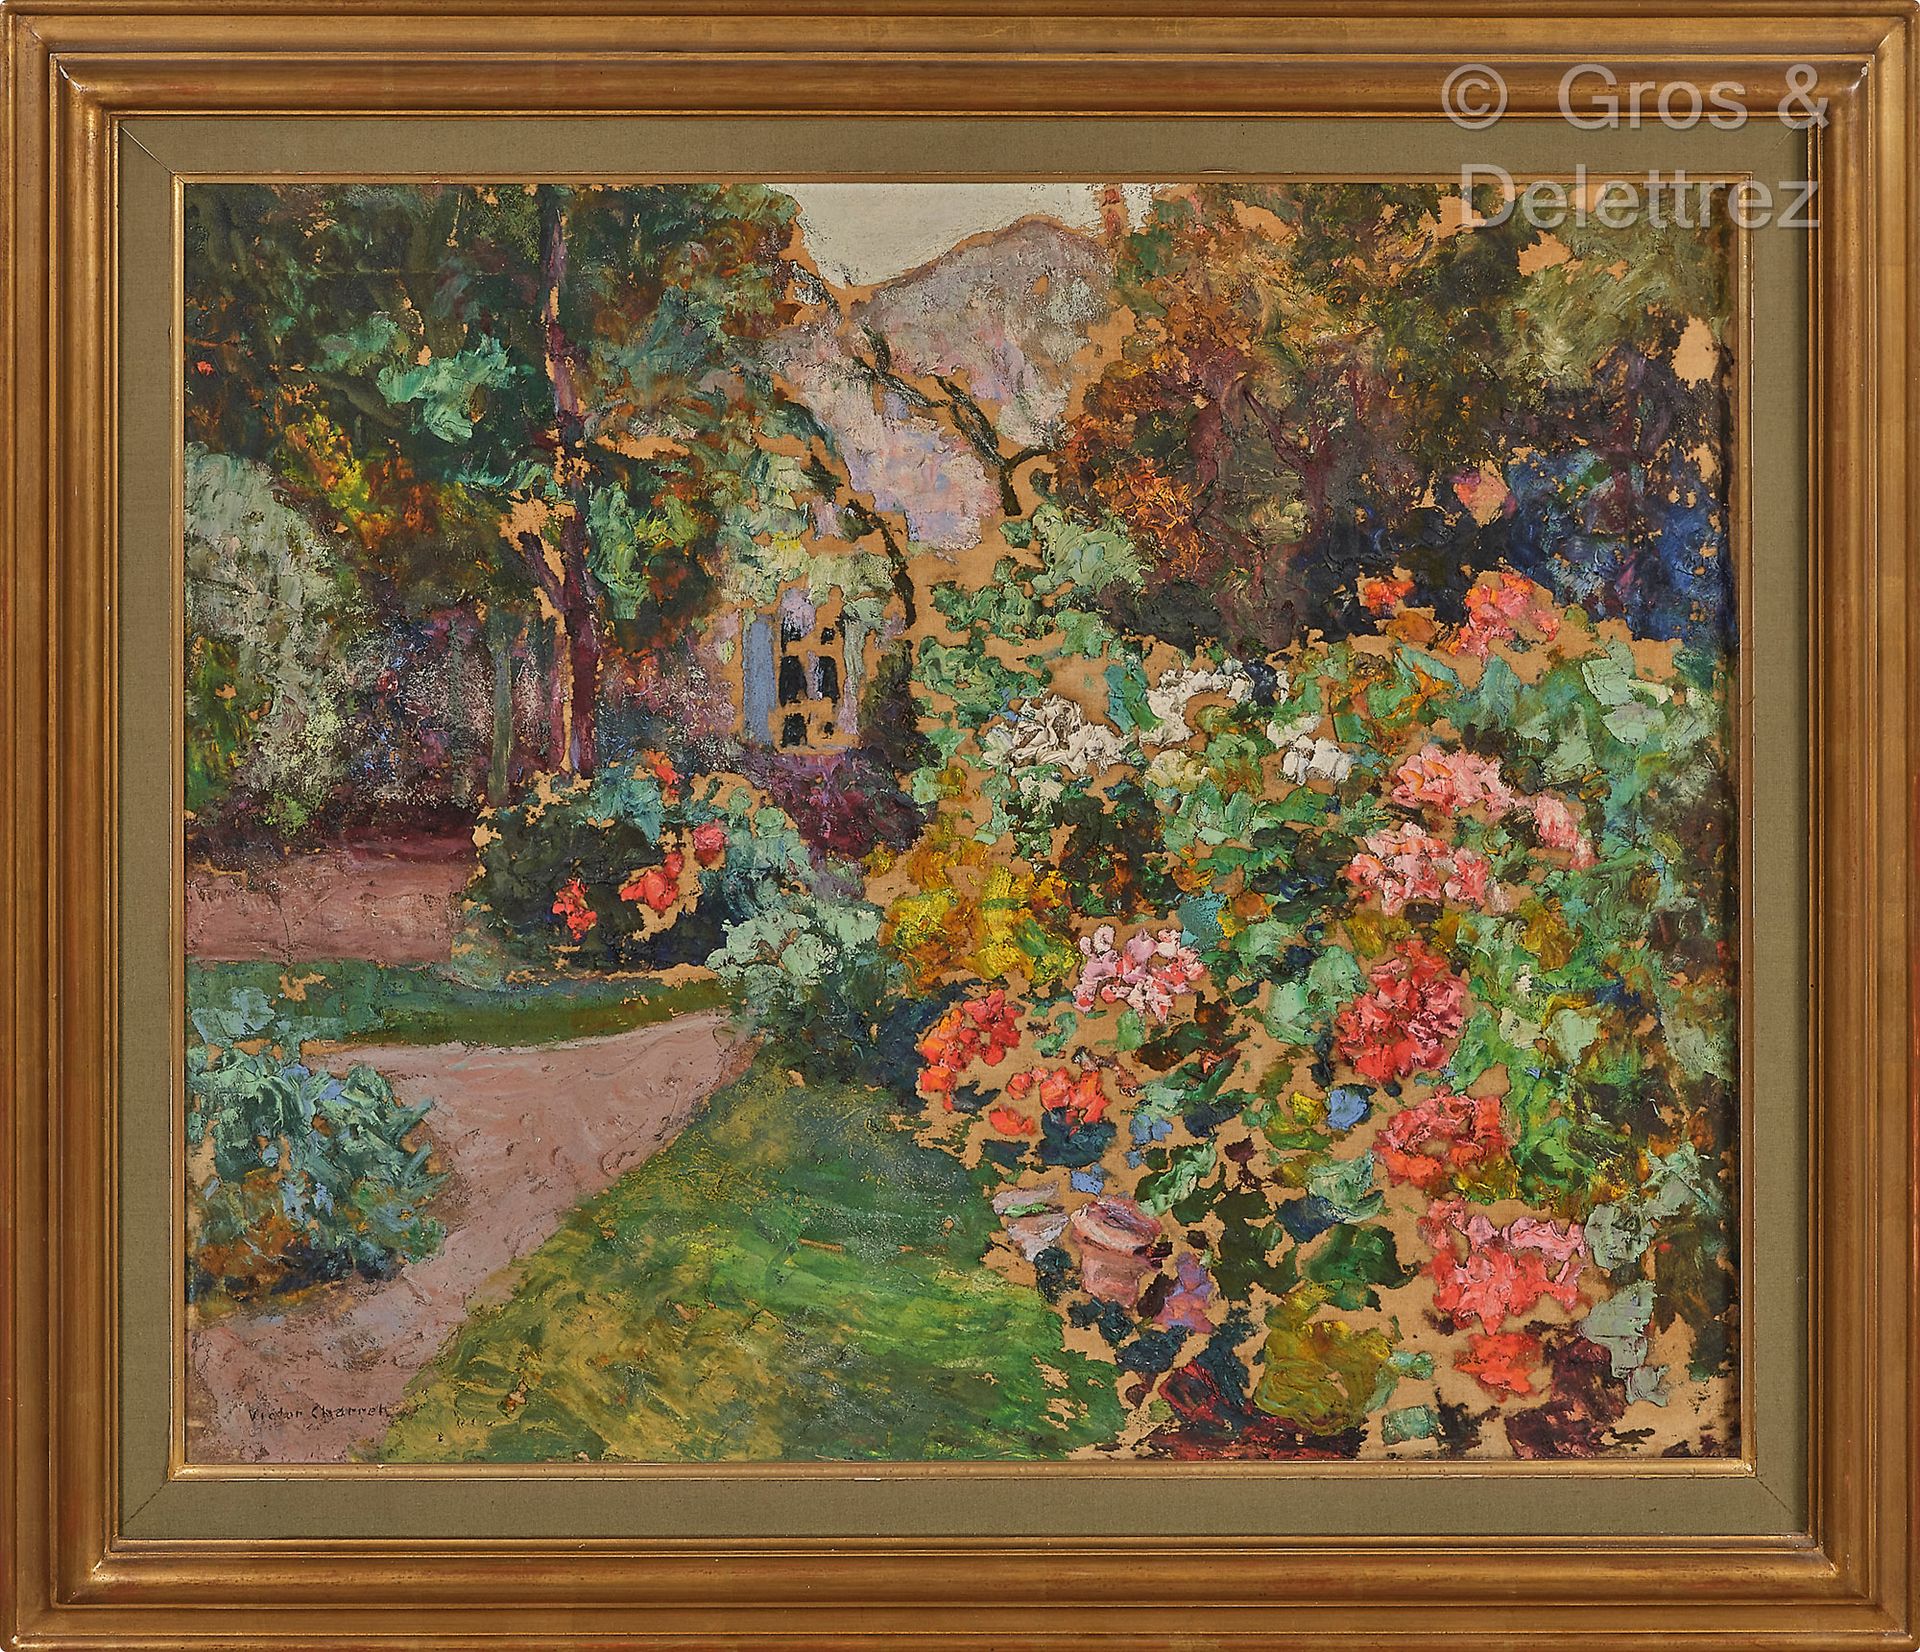 Victor CHARRETON (1864-1936) Bosquet de fleurs devant la maison, circa 1936

Hui&hellip;